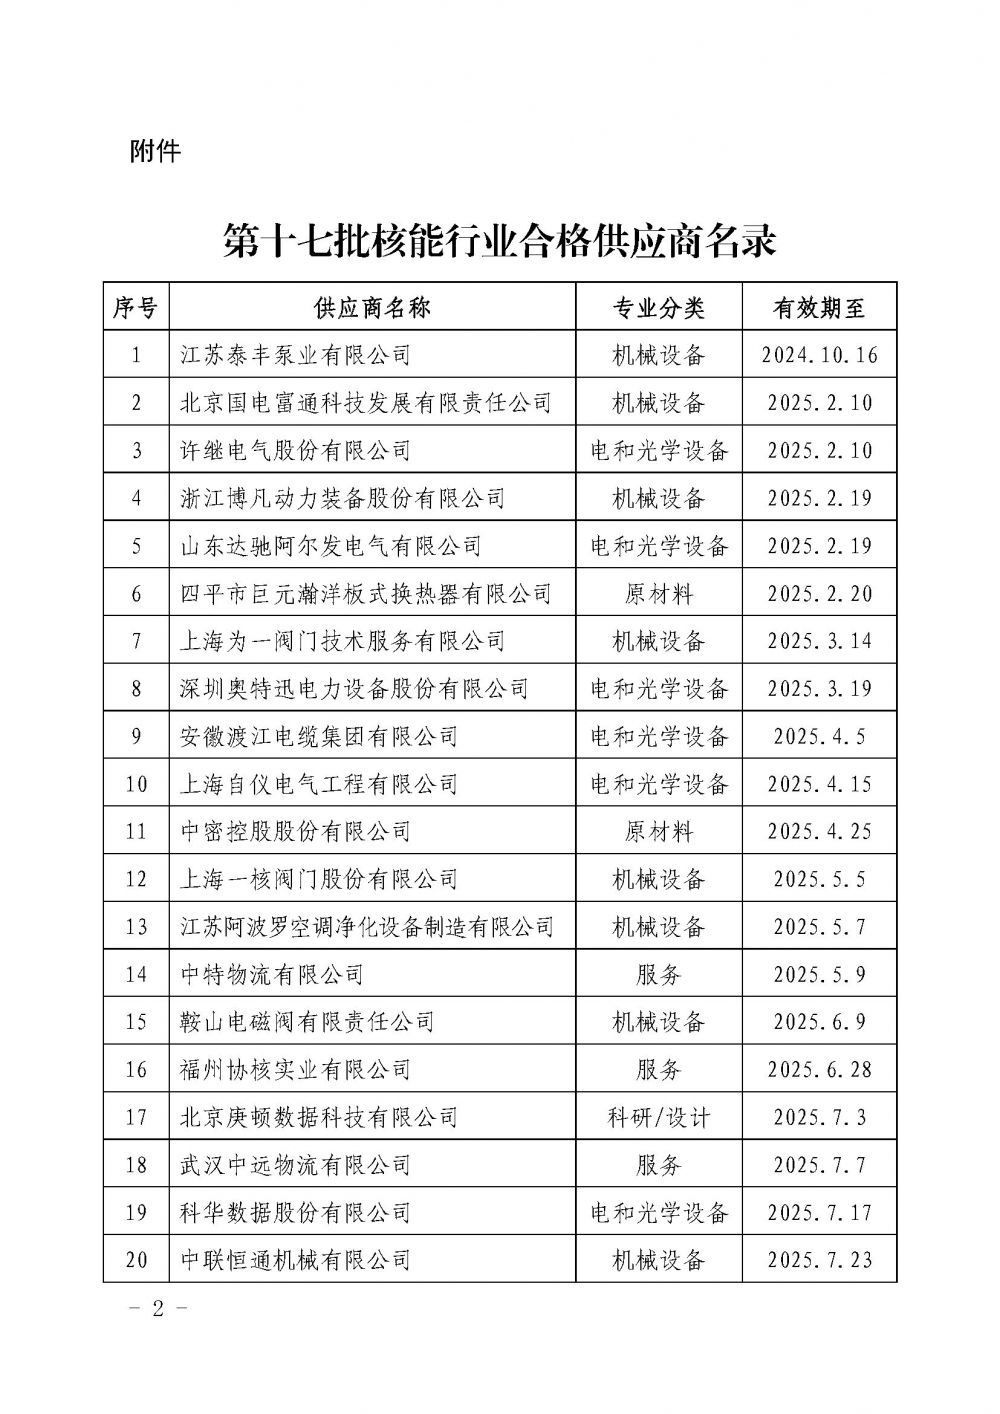 关于发布中国核能行业协会核能行业第十七批合格供应商名录的公告_页面_2.jpg